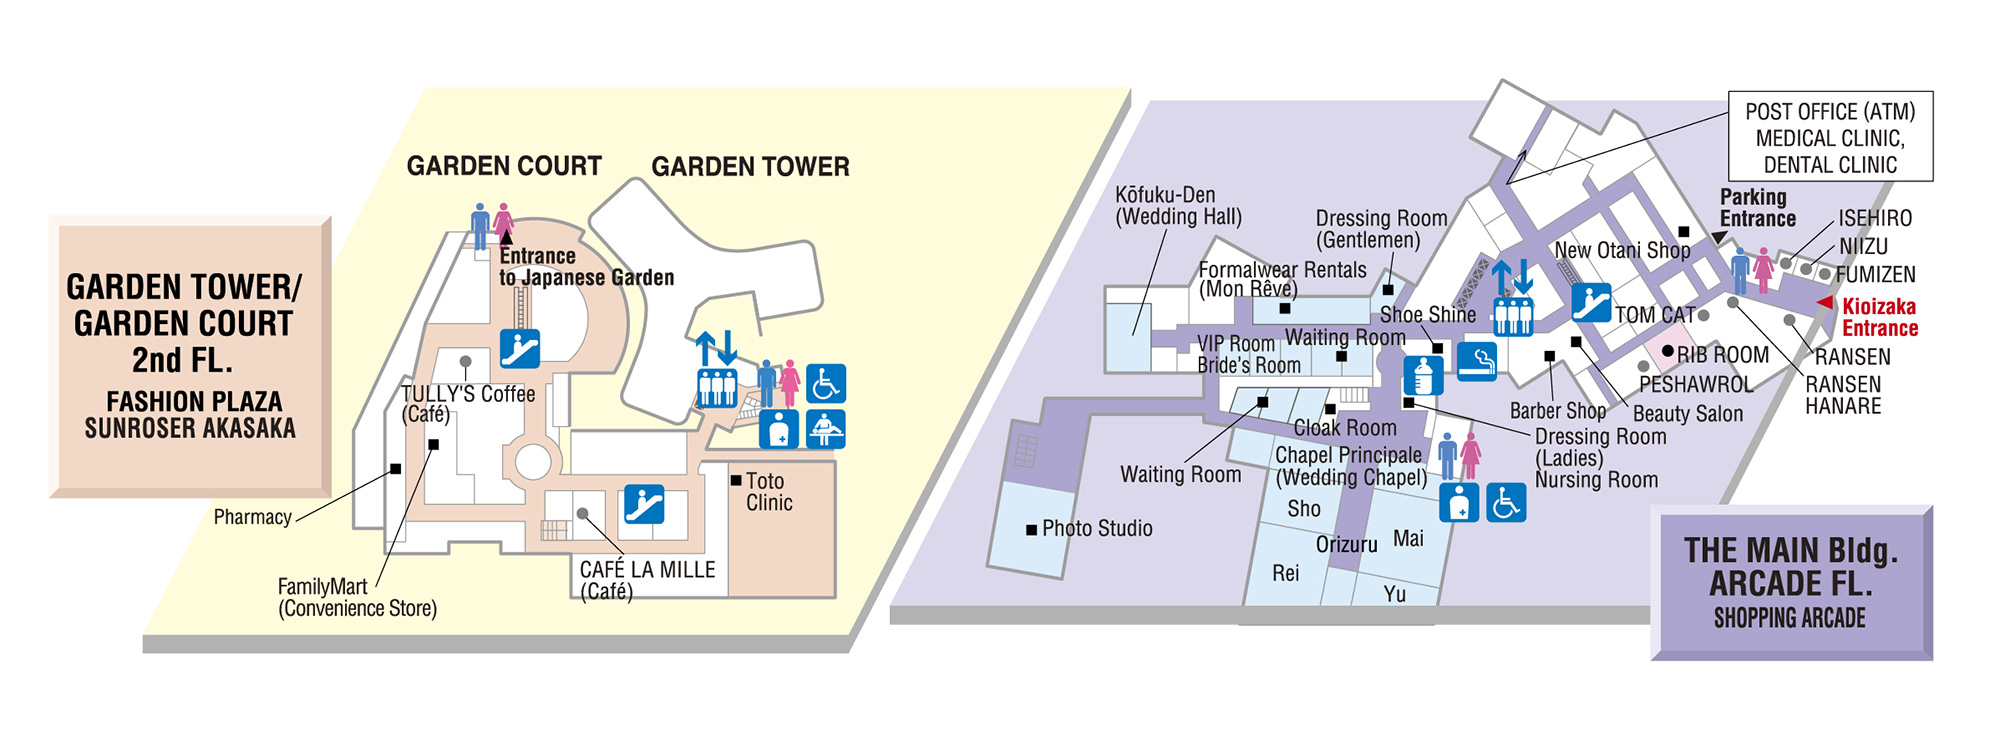 Floor Map - GARDEN TOWER/GARDEN COURT 2nd FL.